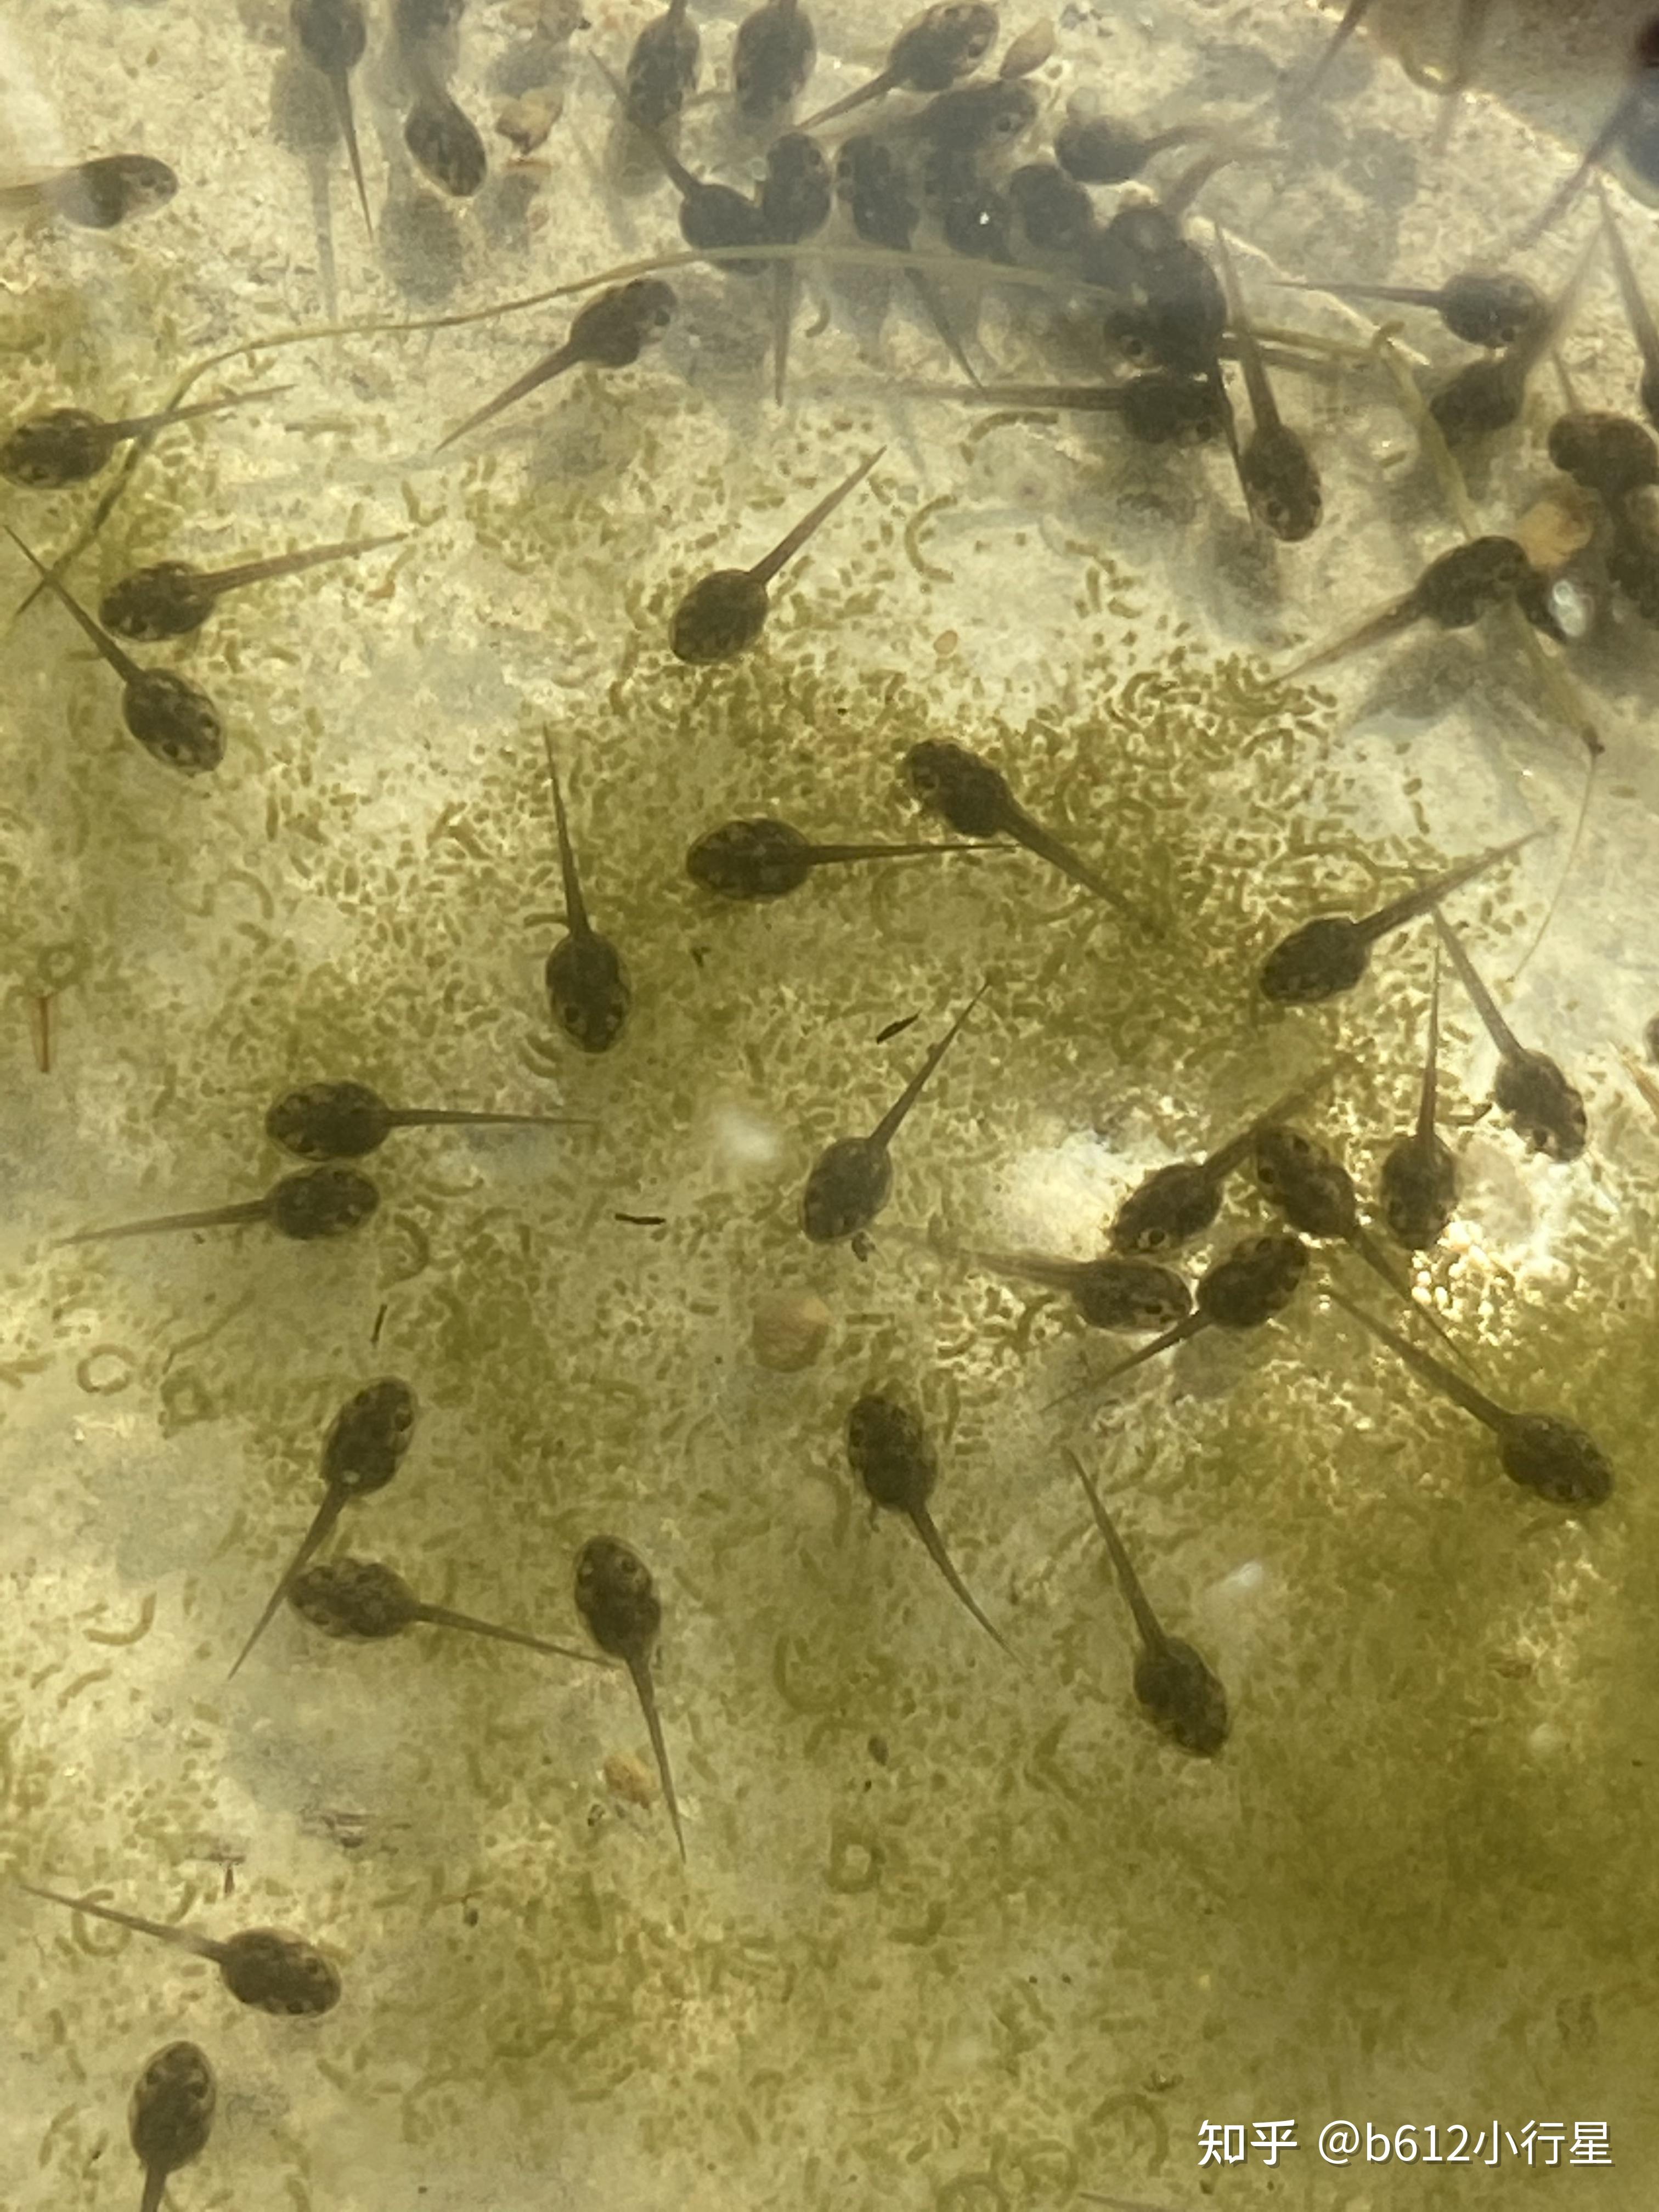 记录青蛙卵孵化和小蝌蚪生长过程